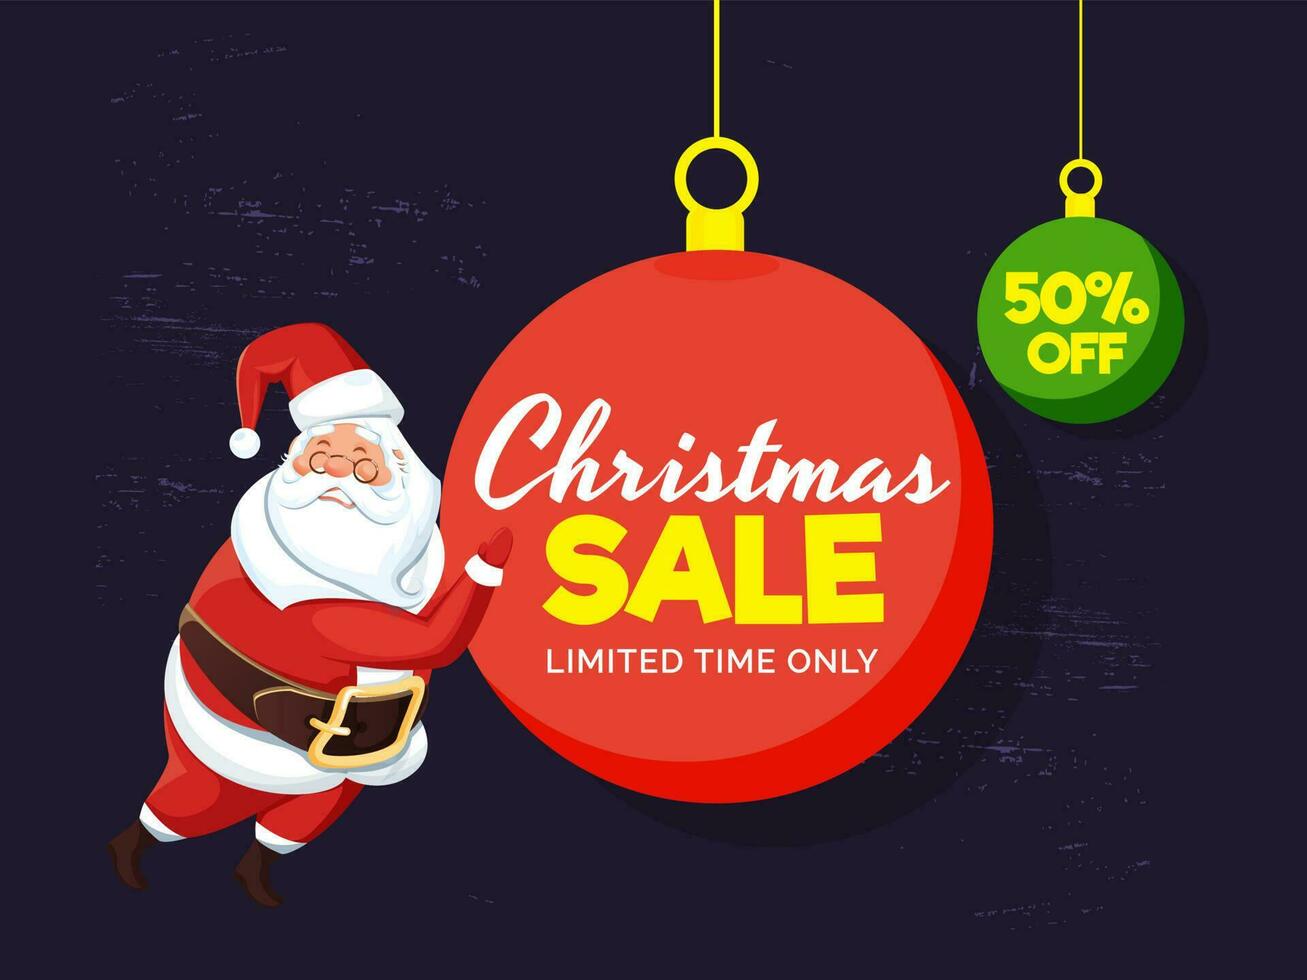 Weihnachten Verkauf Schild, Etikette oder Poster Design mit Rabatt Angebot und Santa claus Illustration auf lila Hintergrund. vektor